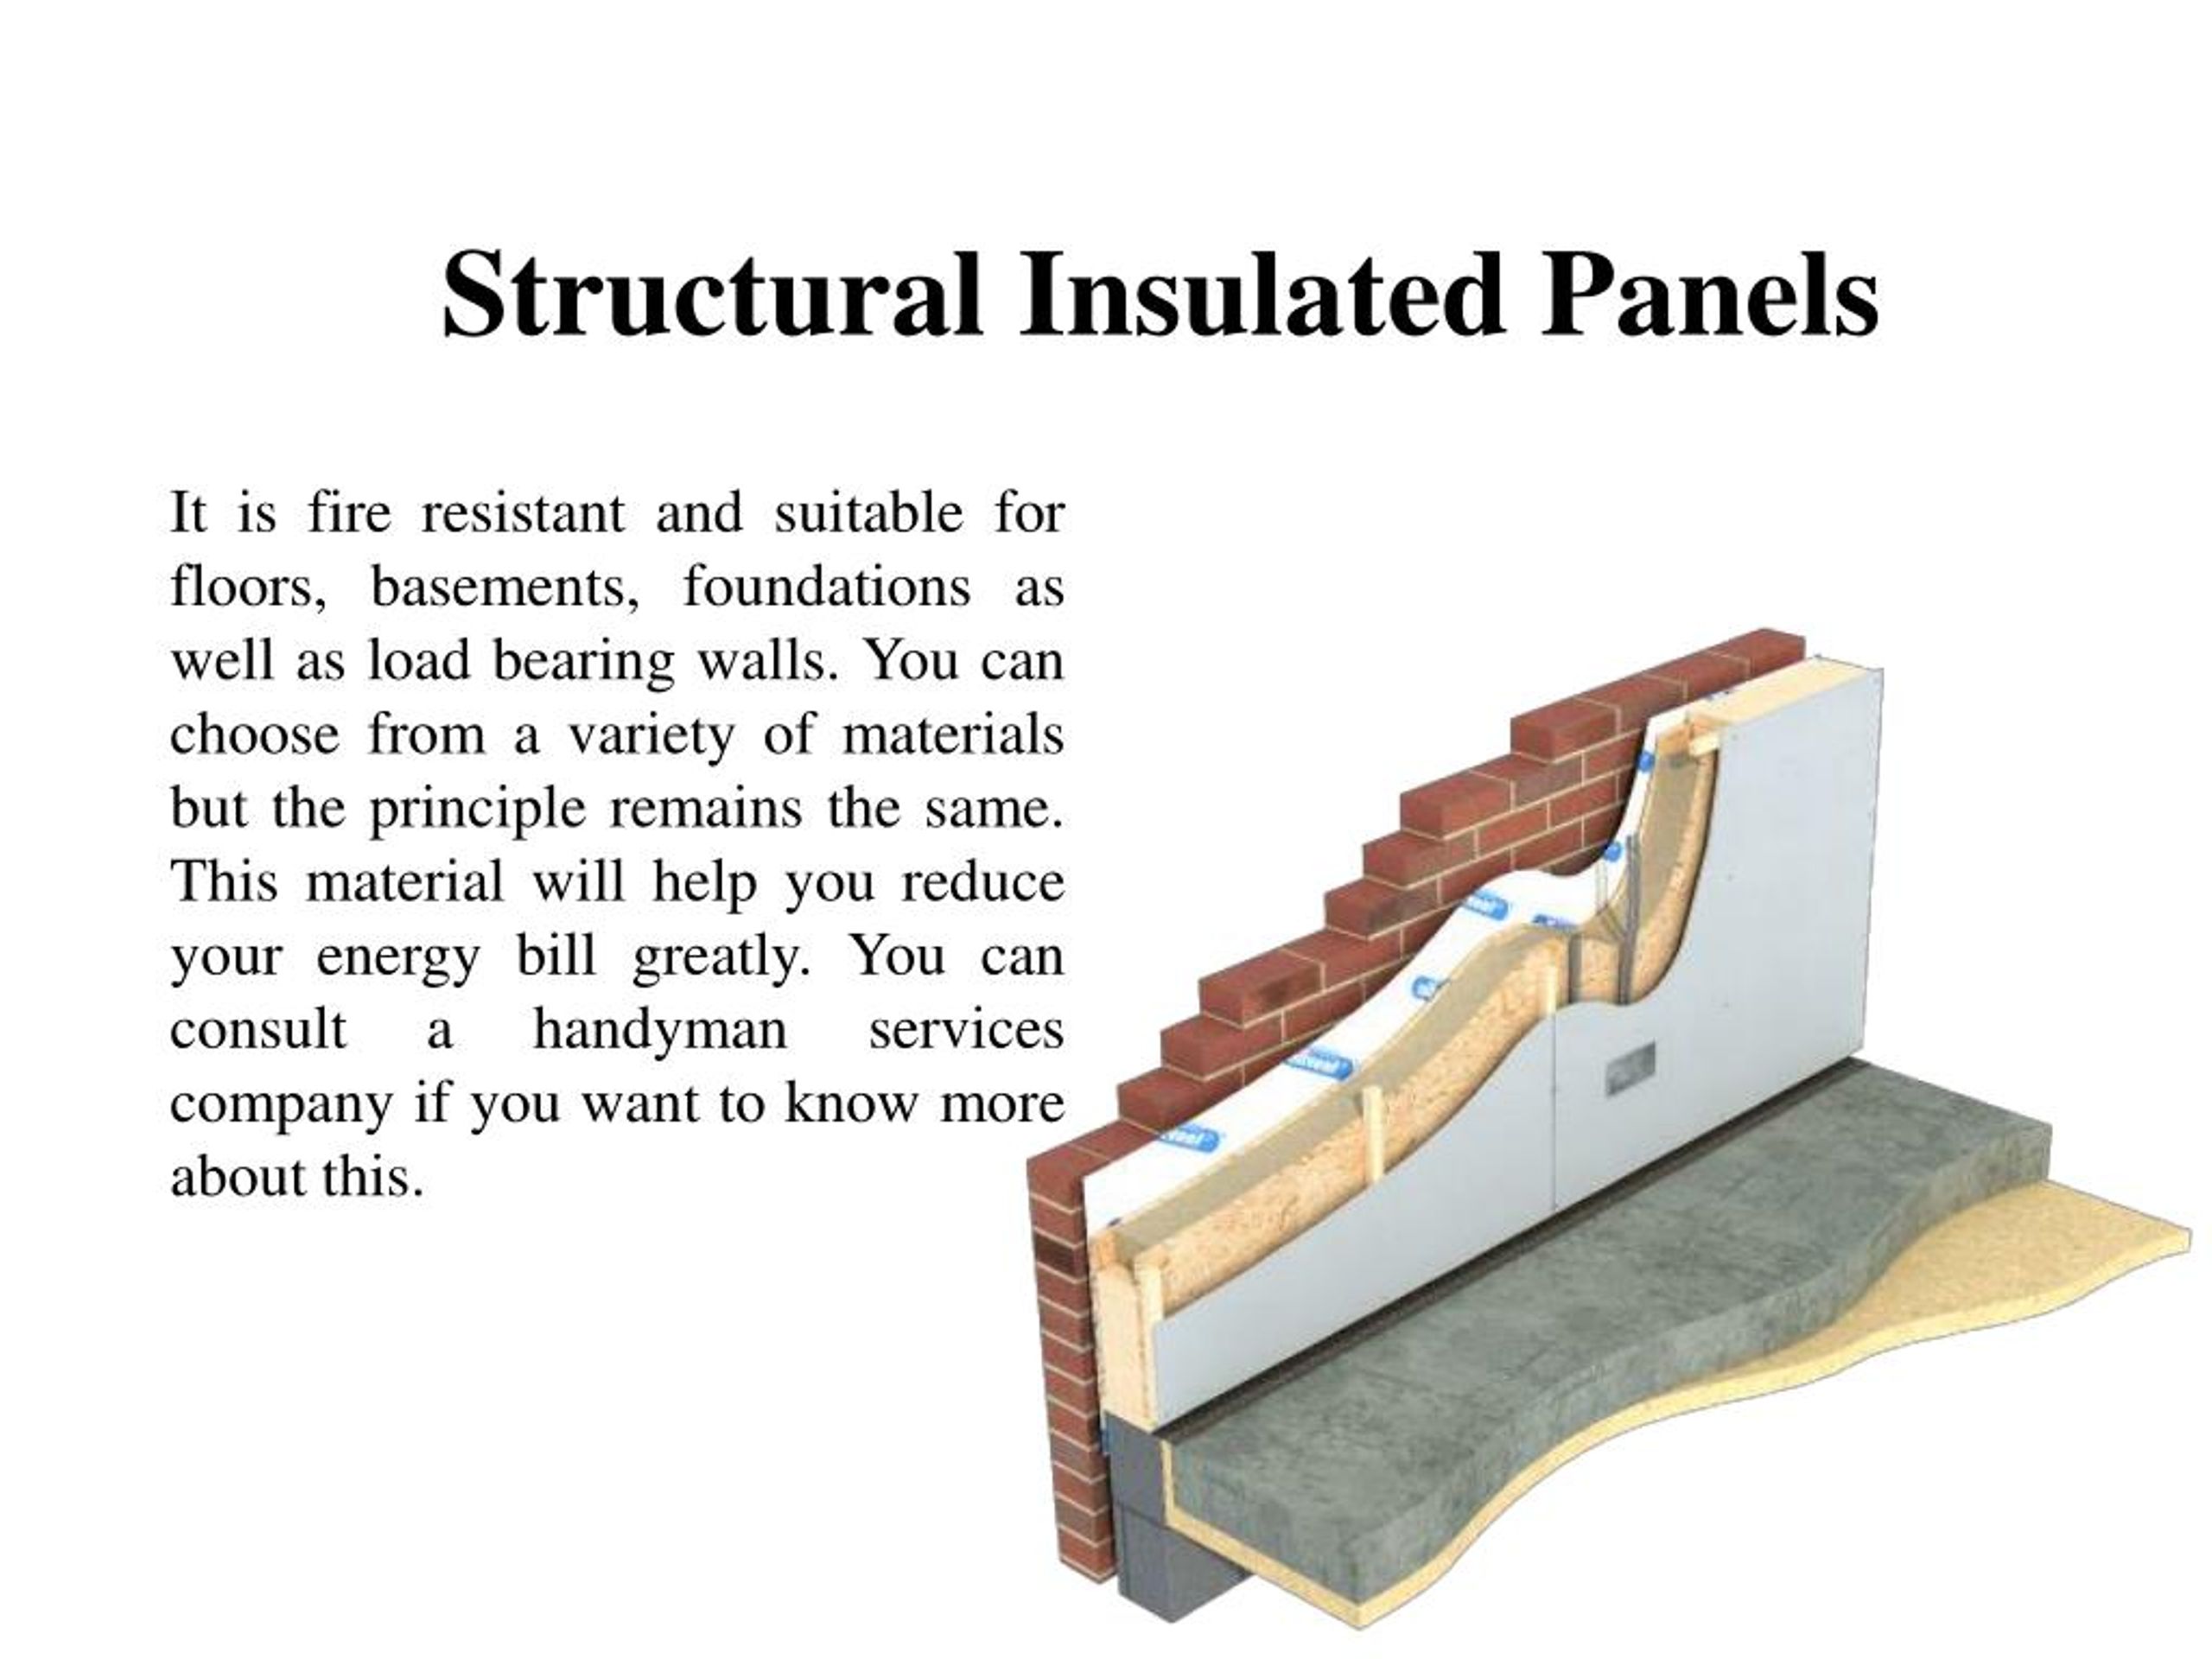 Insulated перевод. Теплоизоляционная панель SIP (Structural Insulated Panel). SIP Structural Insulated Panel в дверях Браво. Теплоизоляционная панель SIP В дверях. (Structural Insulated Panel) у термо двери.